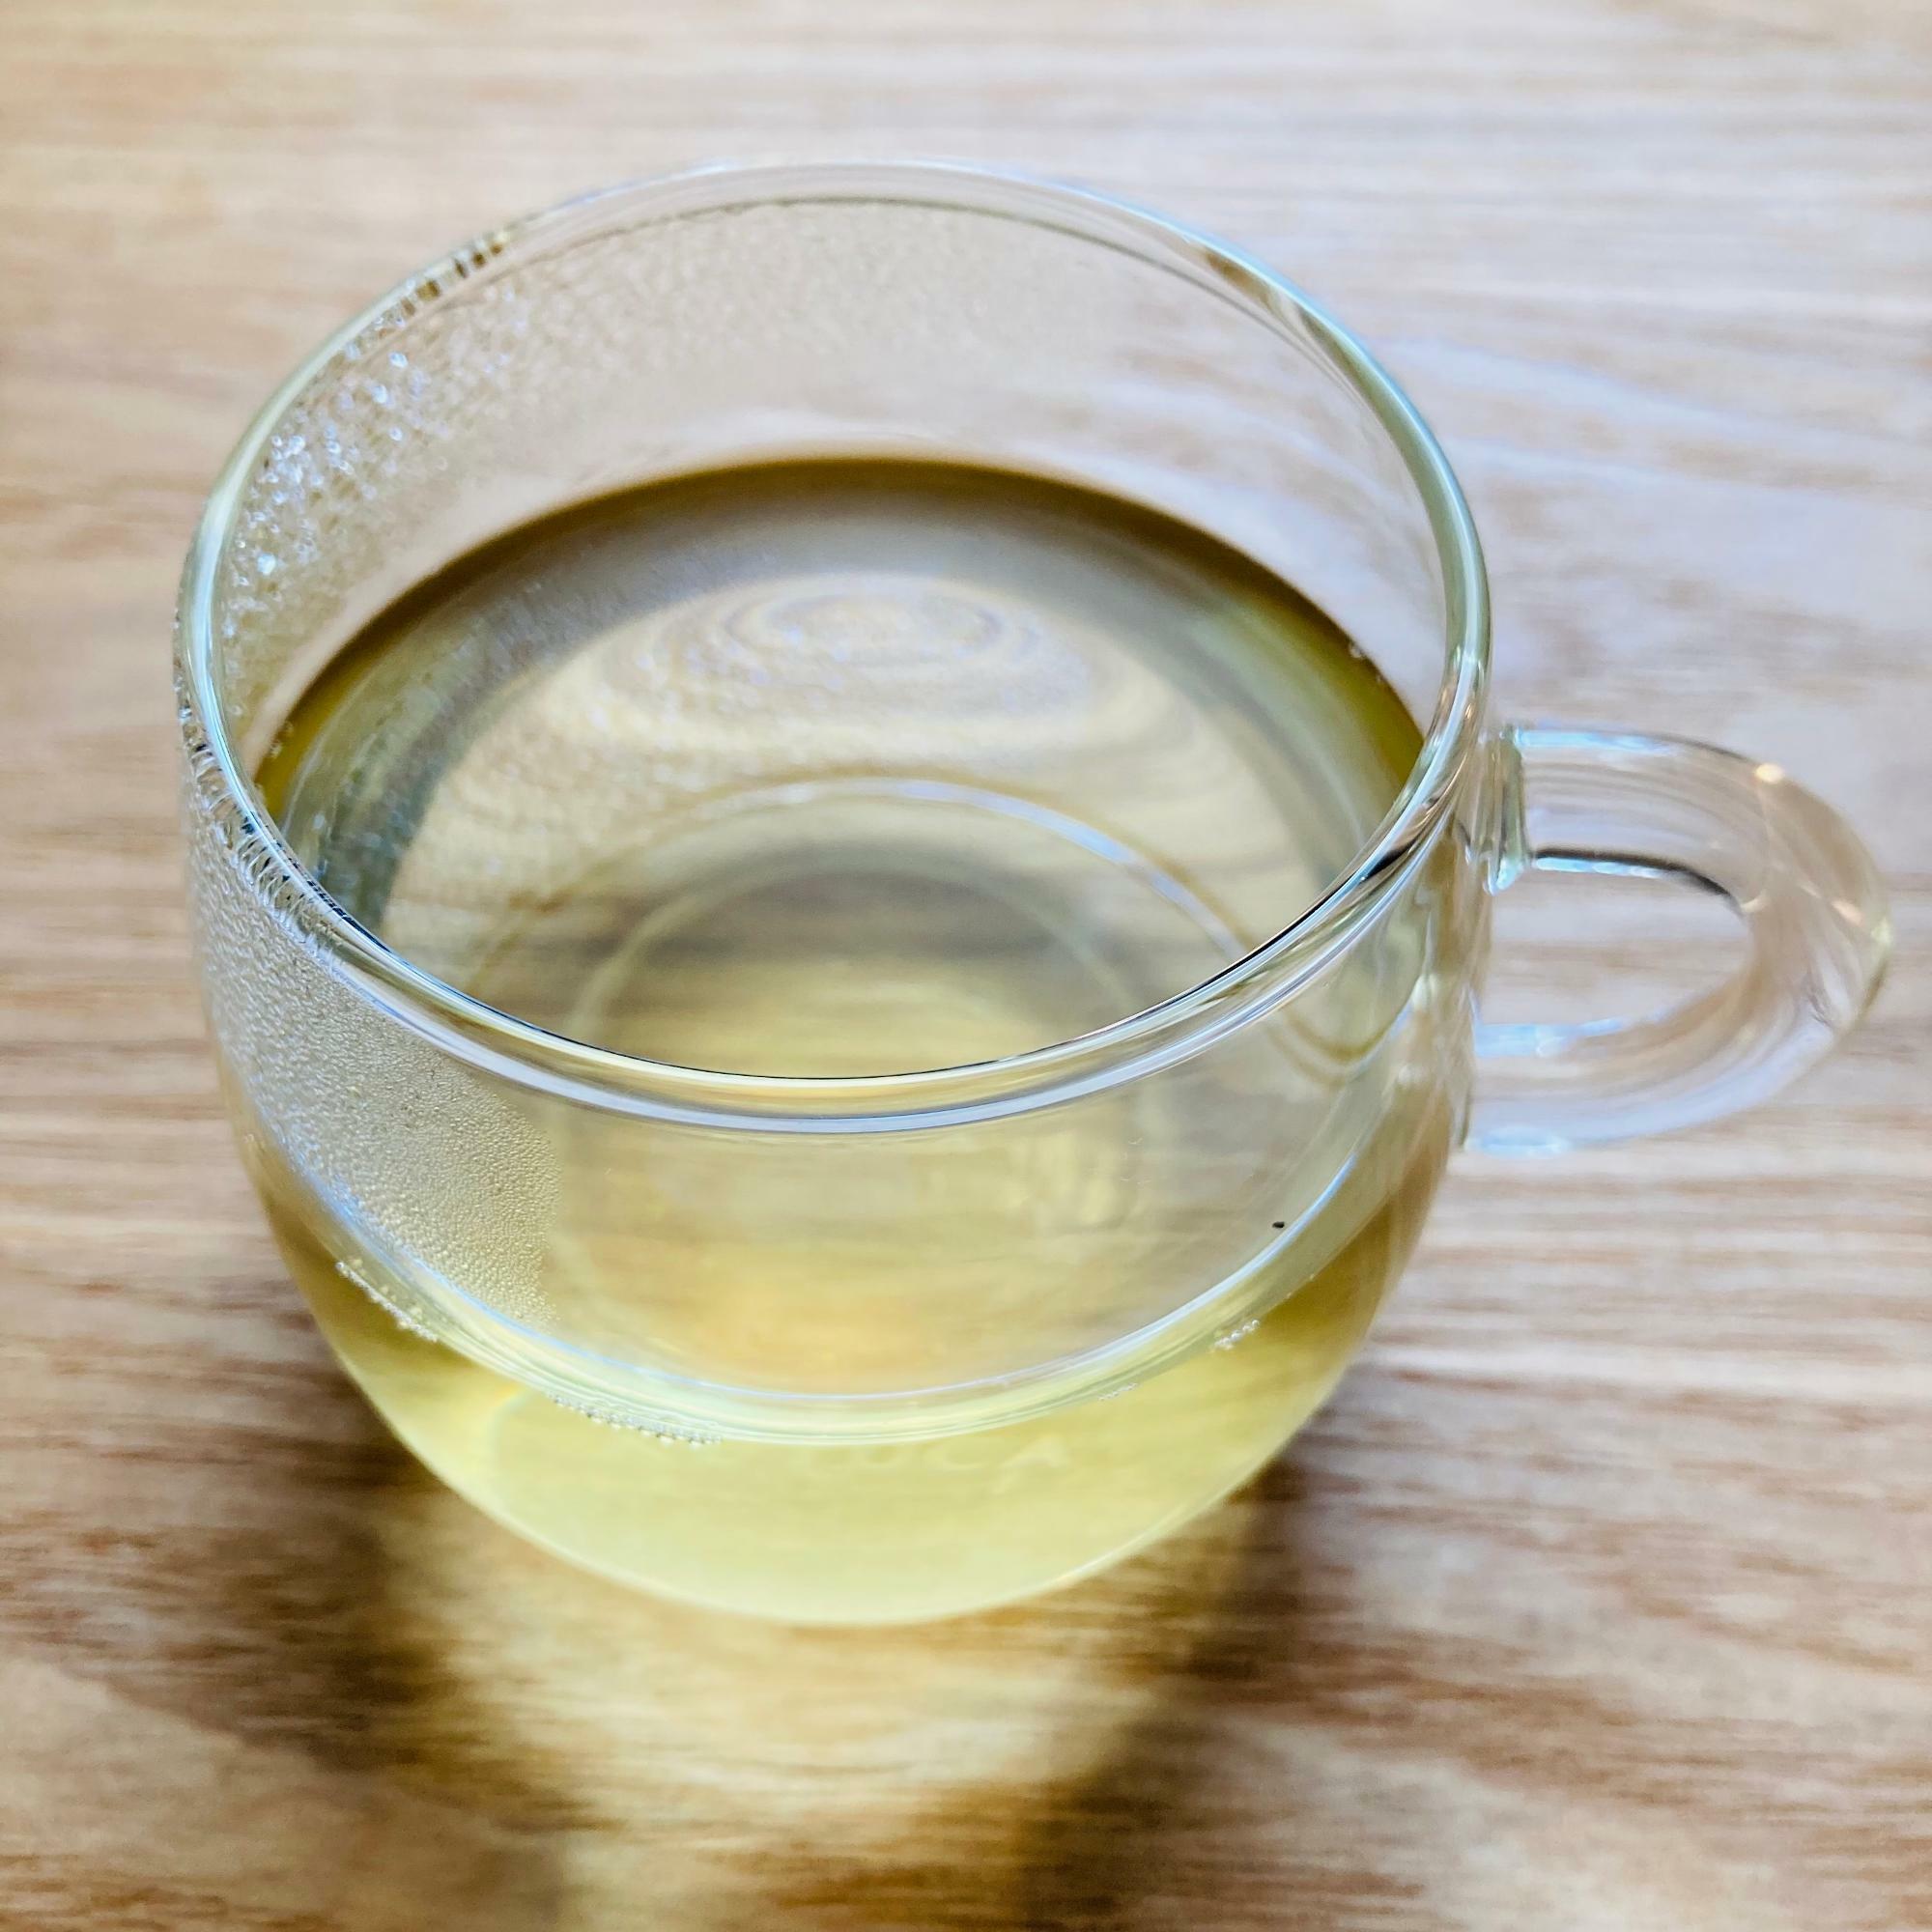 釜炒り茶の製法で作られているので黄色い茶液